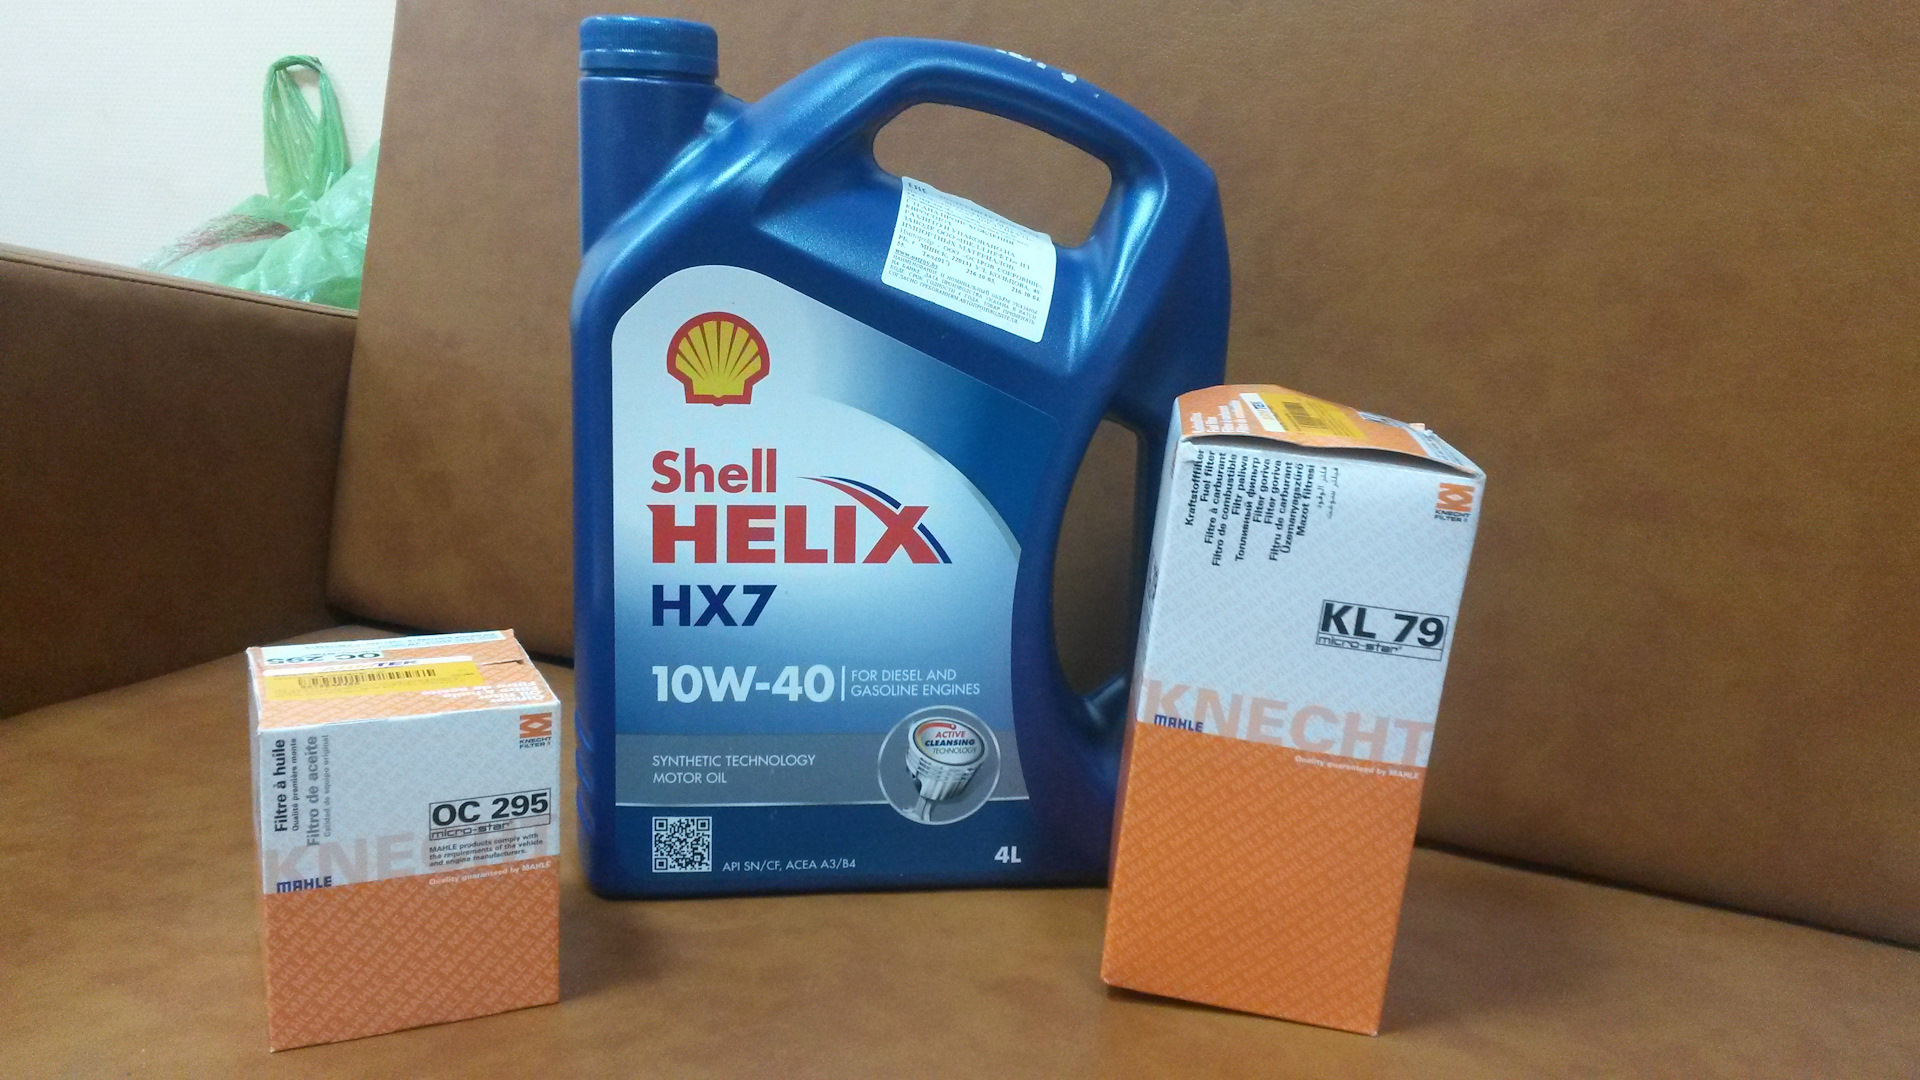 Купить масло полусинтетику шелл. Shell Helix 10w 40 синтетика. Шелл 10w 40 полусинтетика. Масло Шелл Хеликс 10w 40 полусинтетика. Shell 10w 40 приозиства.